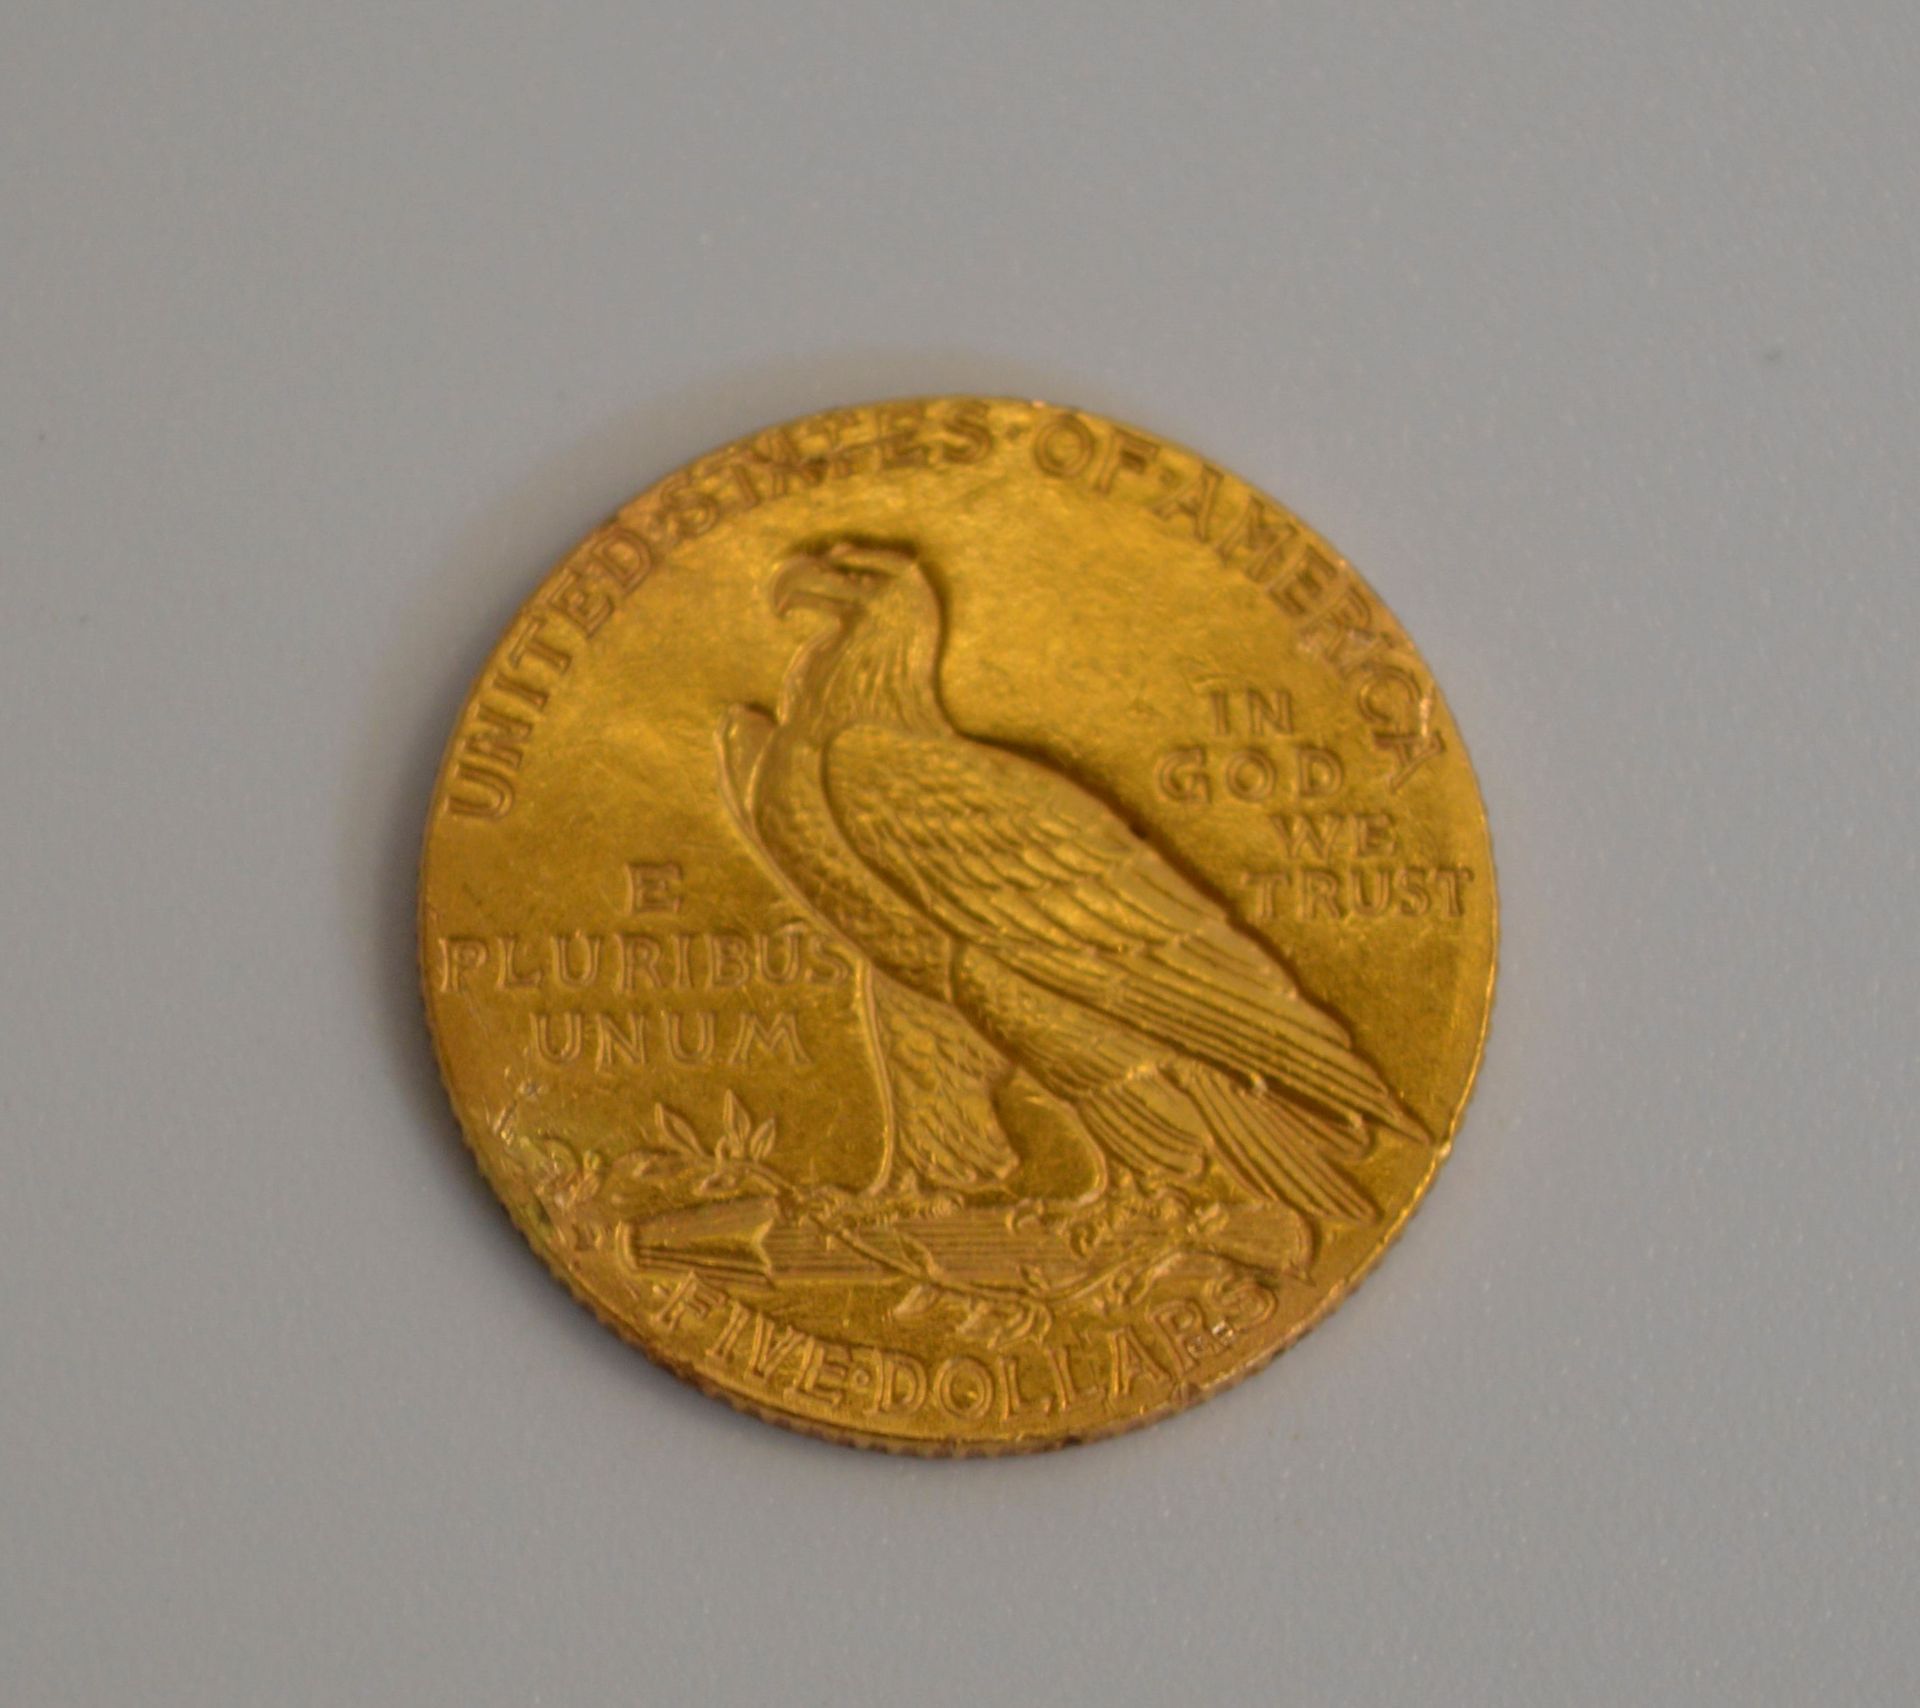 5-Dollar Goldmünze "Liberty" (United States of Amerika, 1909) - Image 2 of 3